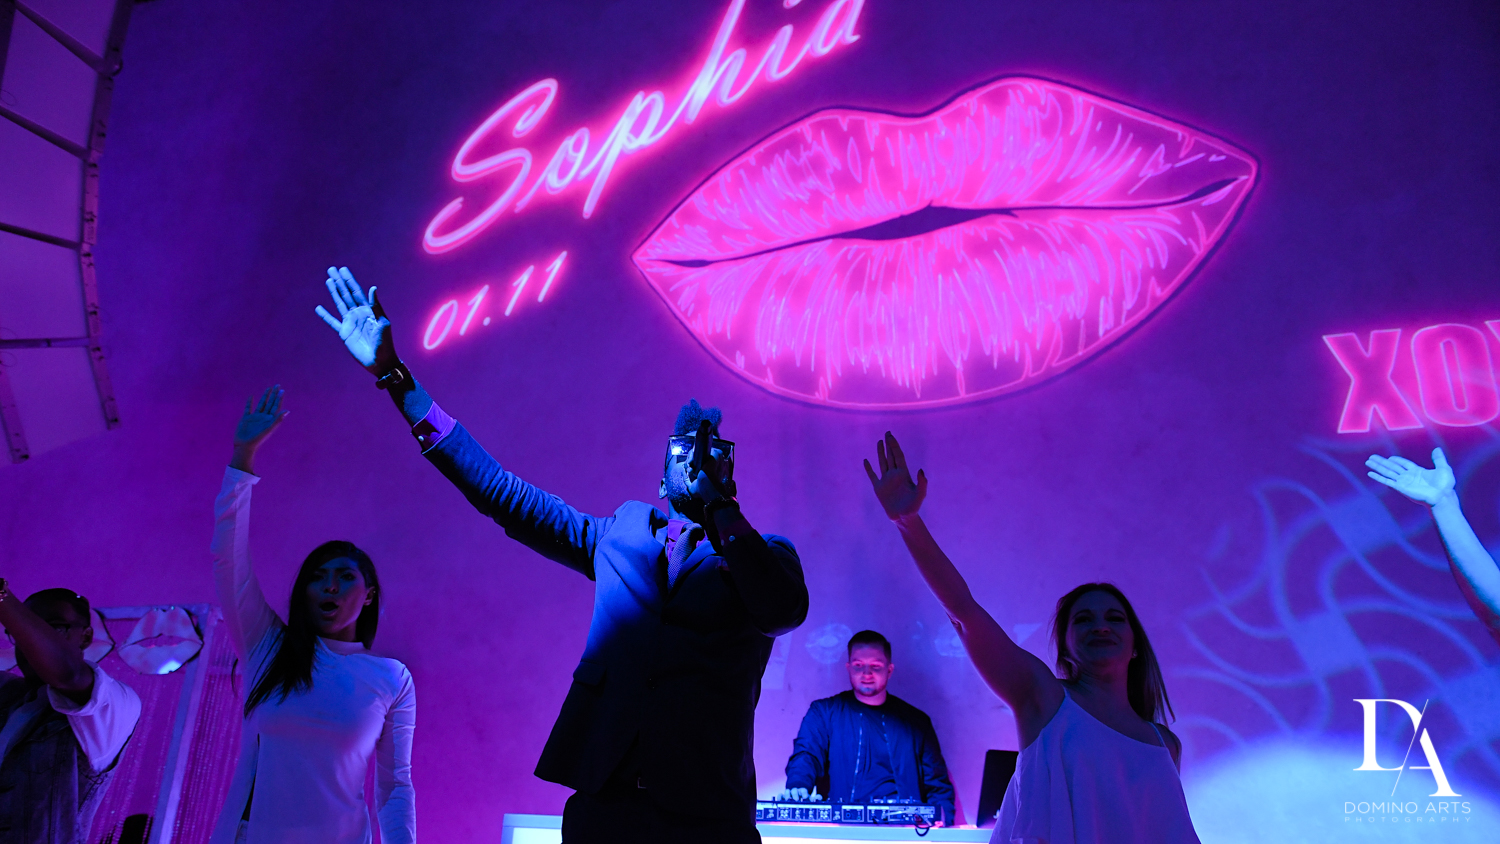 Triple P Entertainment at Pink XO Bat Mitzvah at The Venue Crystal Ballroom by Domino Arts Photography